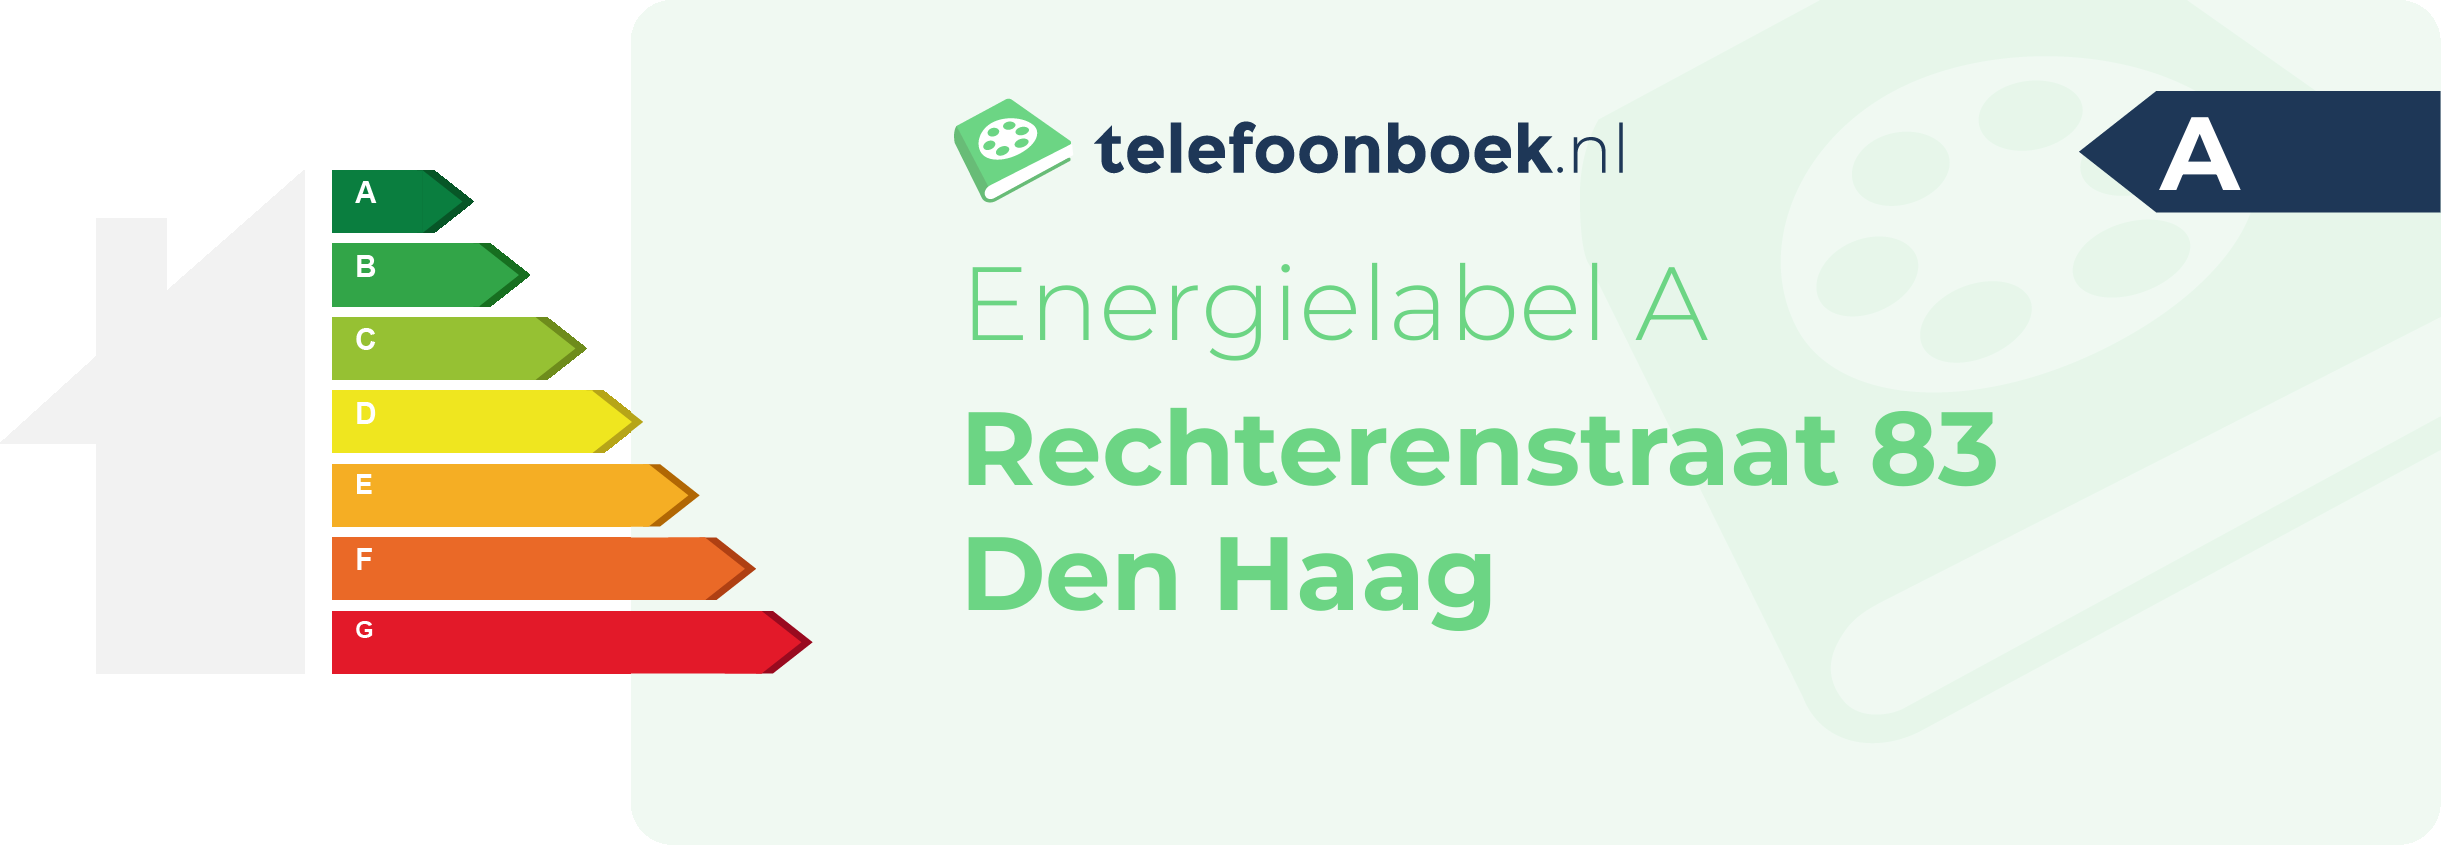 Energielabel Rechterenstraat 83 Den Haag